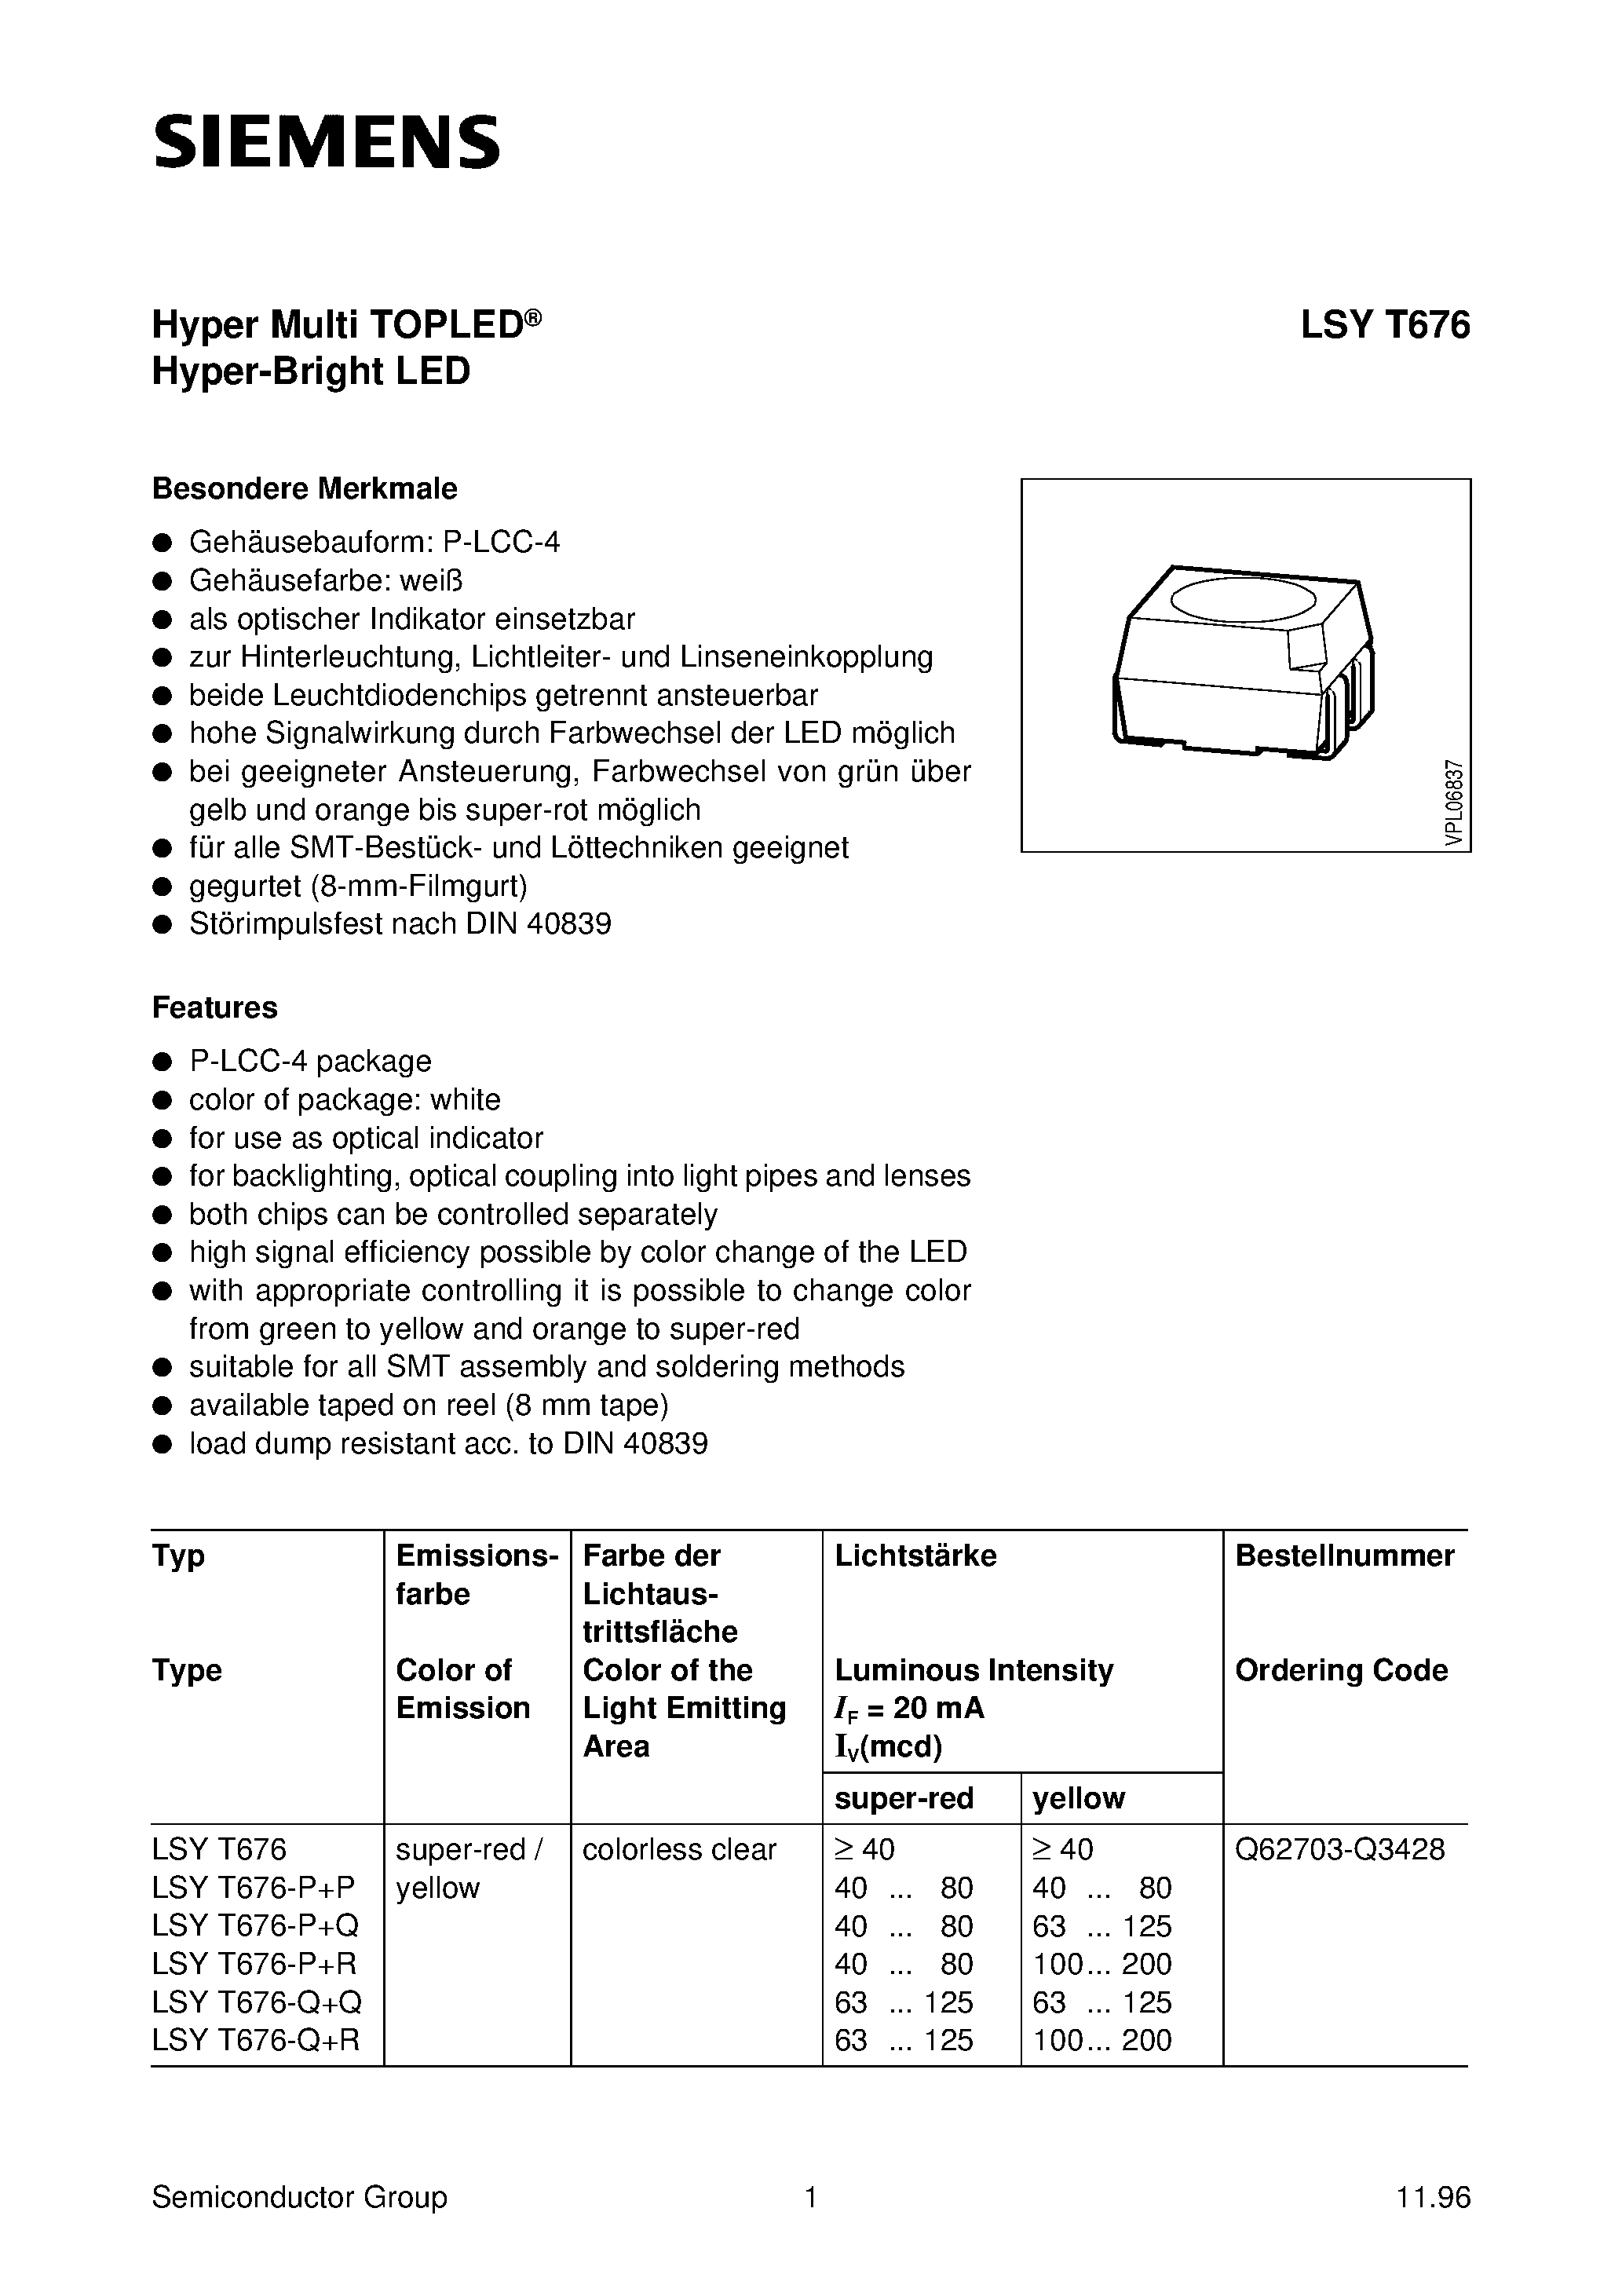 Даташит LSYT676-P+P - Hyper Multi TOPLED Hyper-Bright LED страница 1